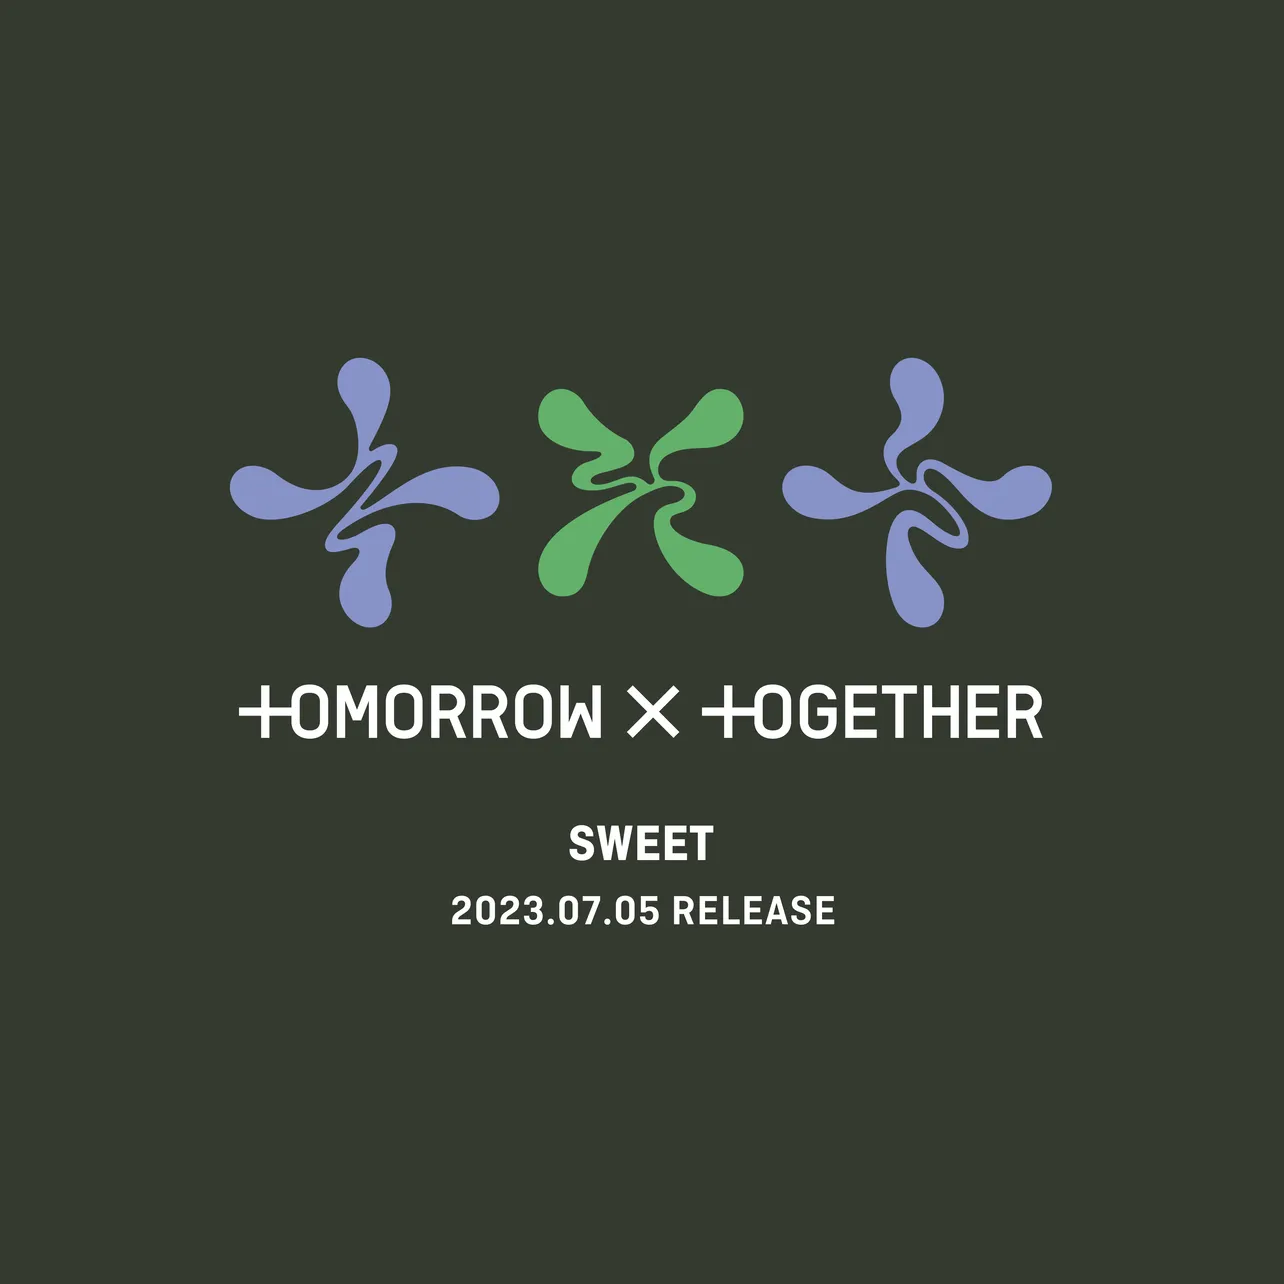 7月5日(水)に発売される2ndアルバム「SWEET」のロゴ